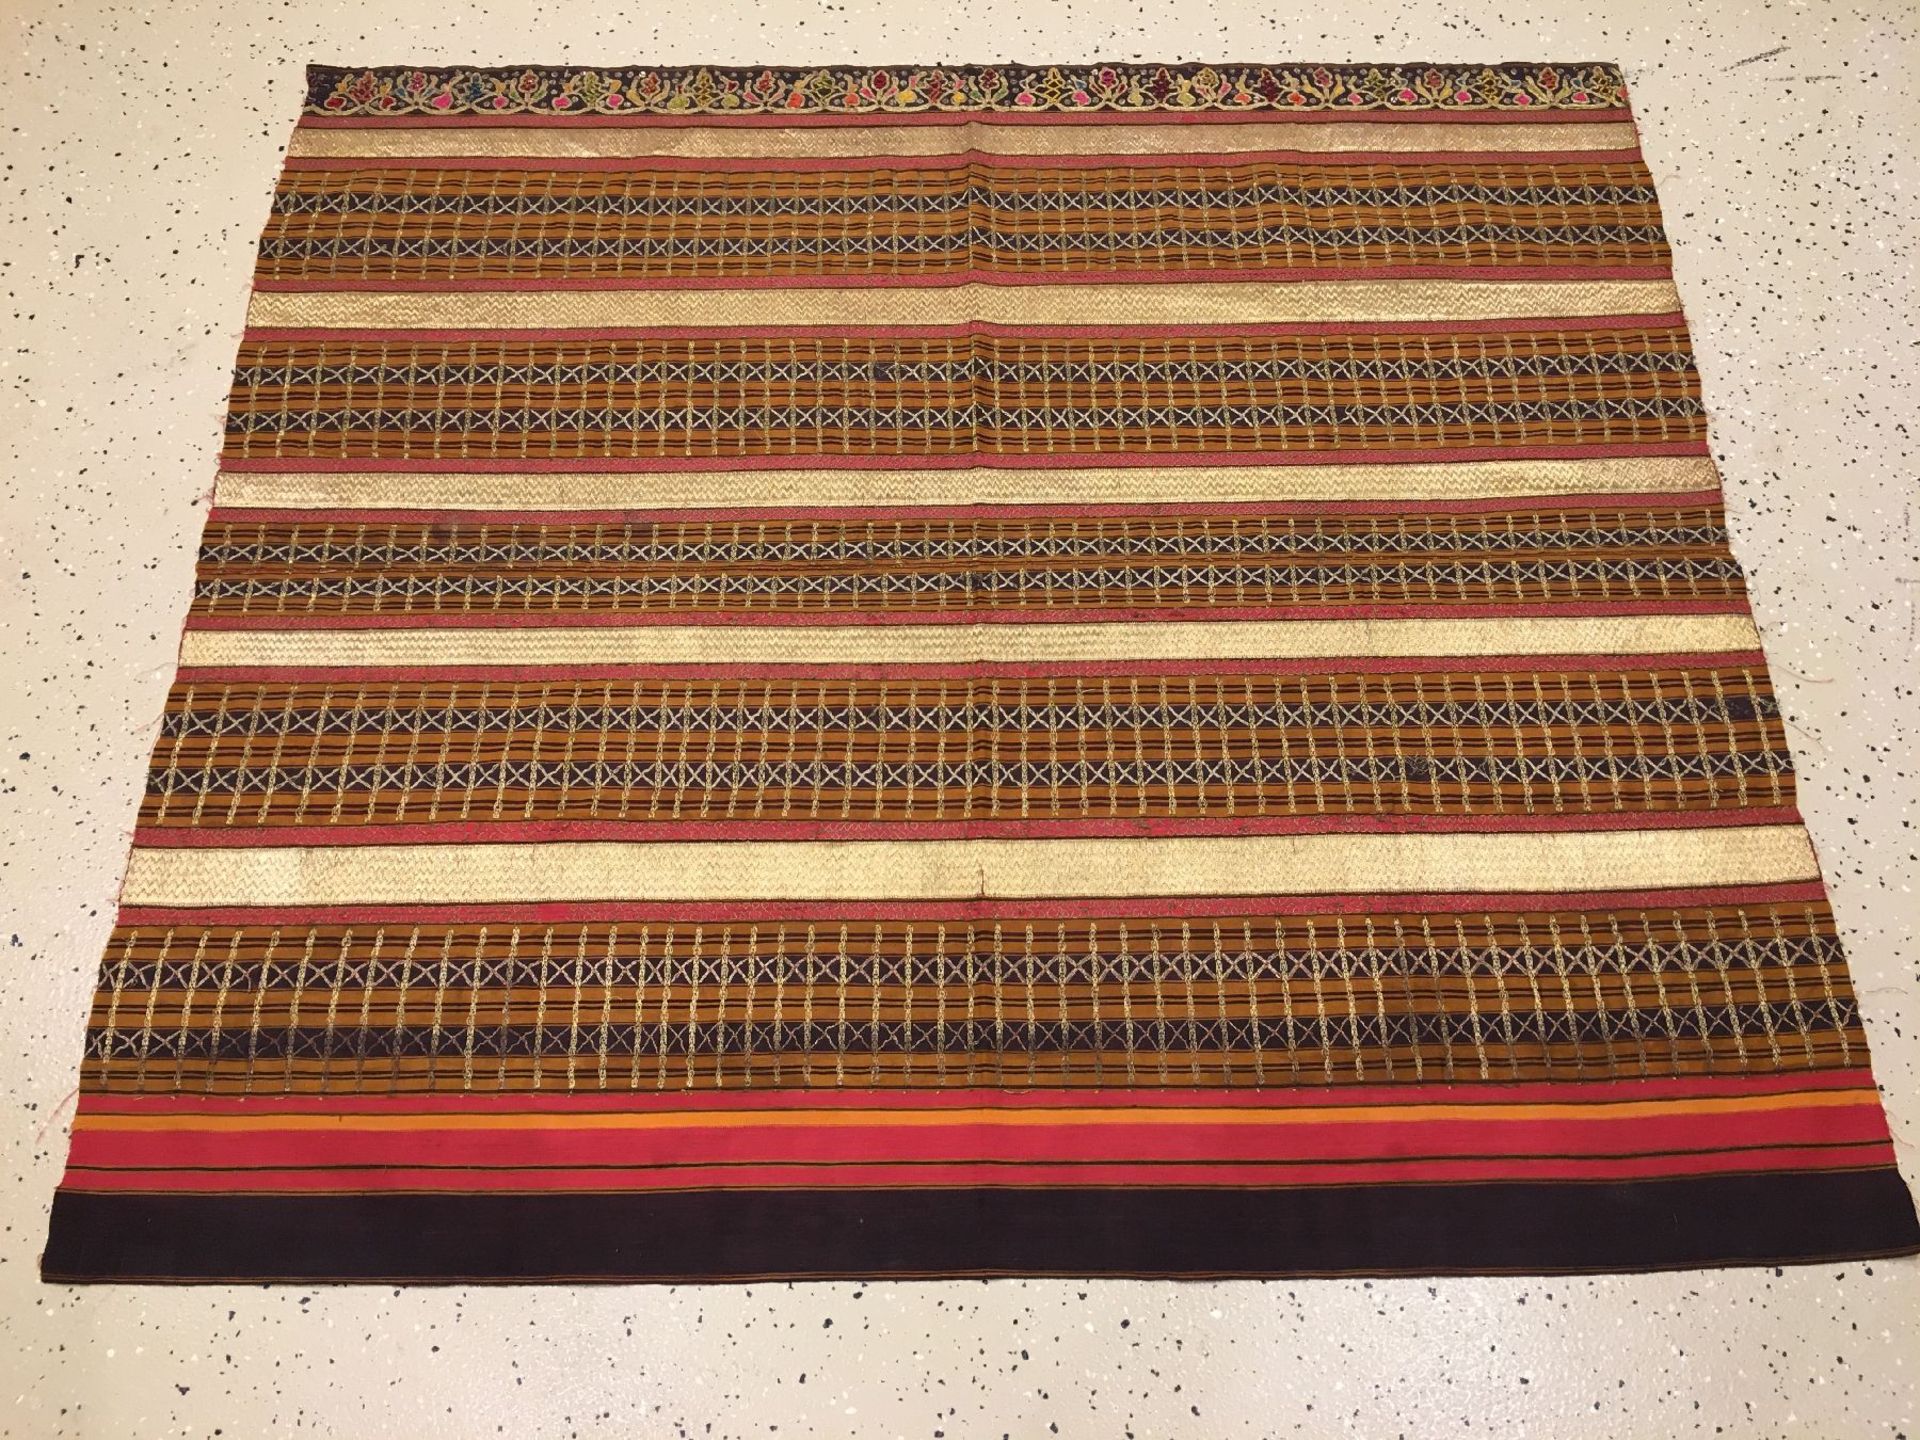 Feines indonesisches "Zeremonial-Textil" (Metallbroschiert) alt, Indonesien, um 1910/1920, Seiden- - Bild 2 aus 9